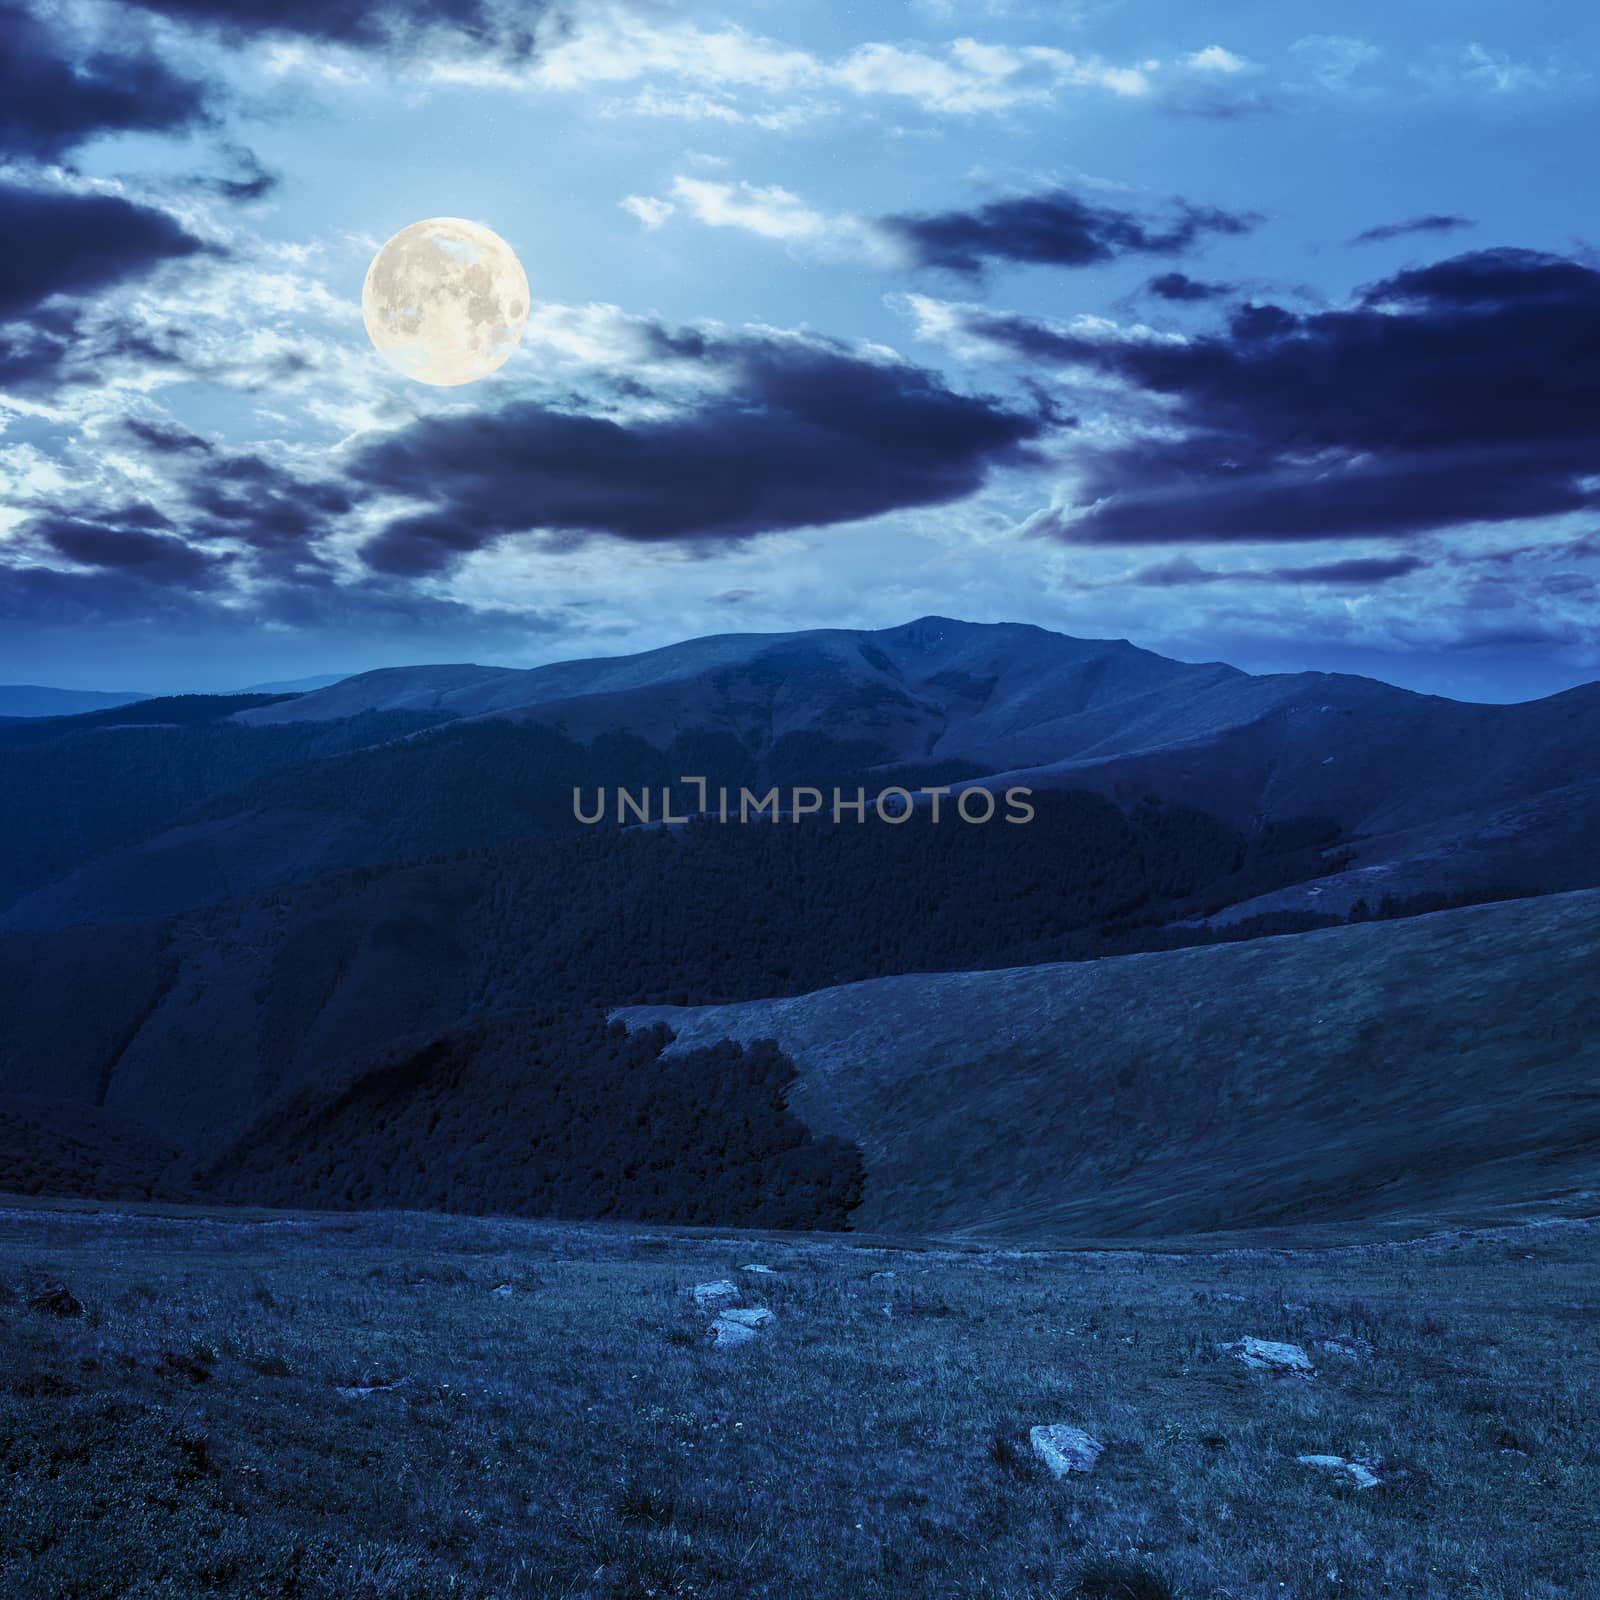 white sharp stones on the hillside of mountain range at night in full moon light